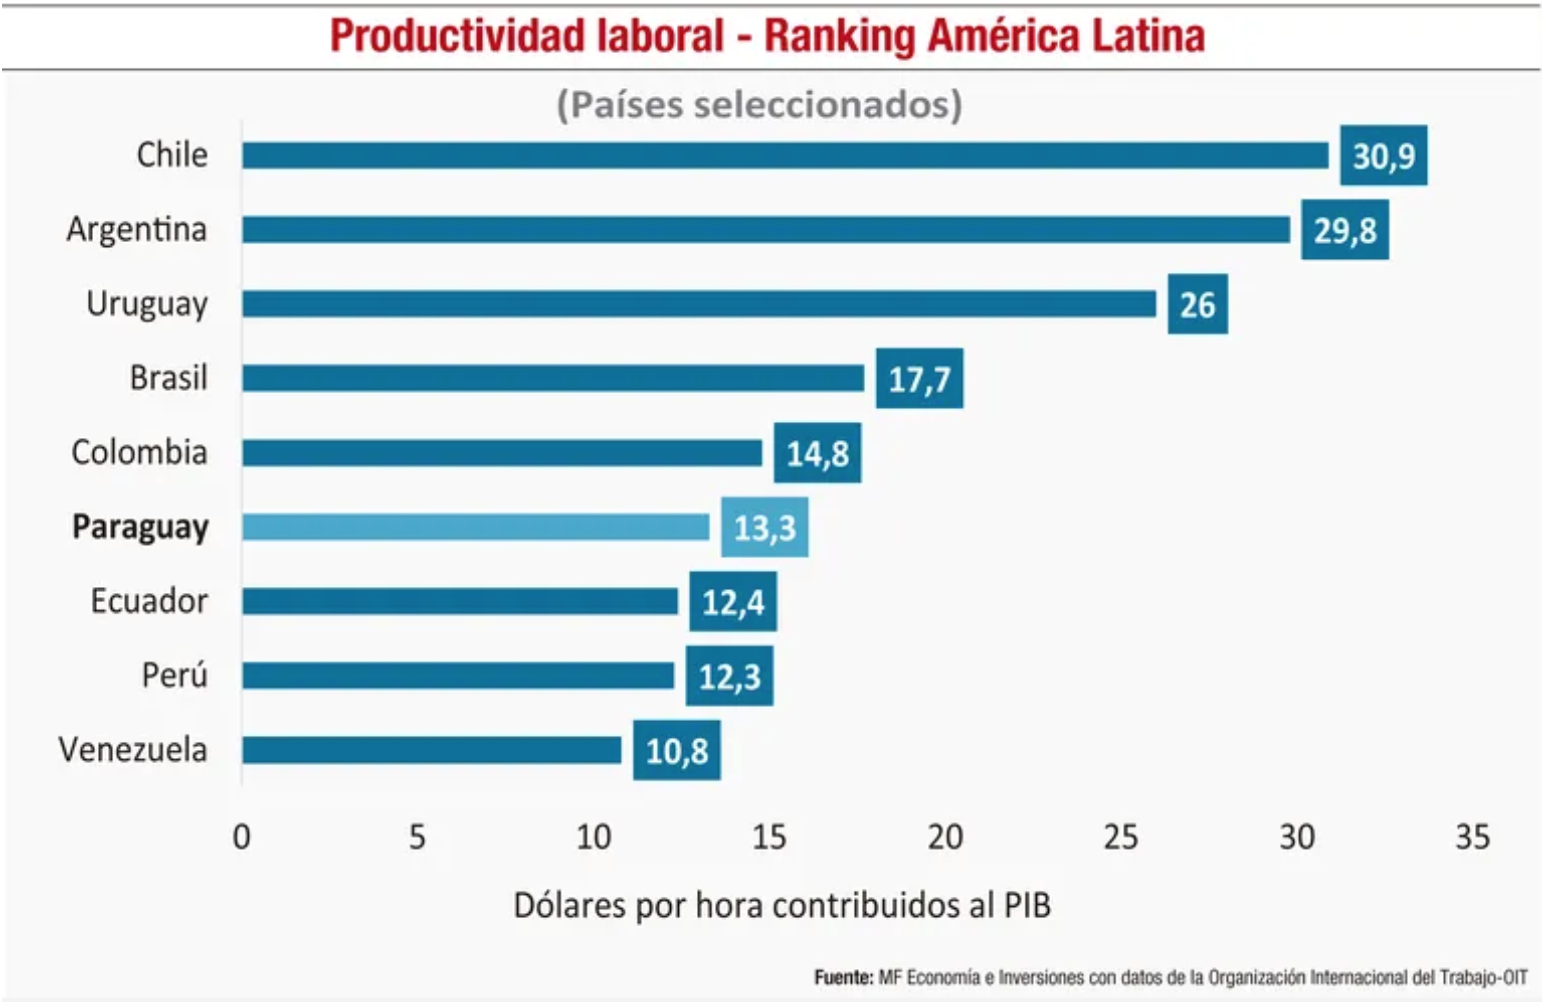 Paraguay, pandemia, y pérdida de su productividad